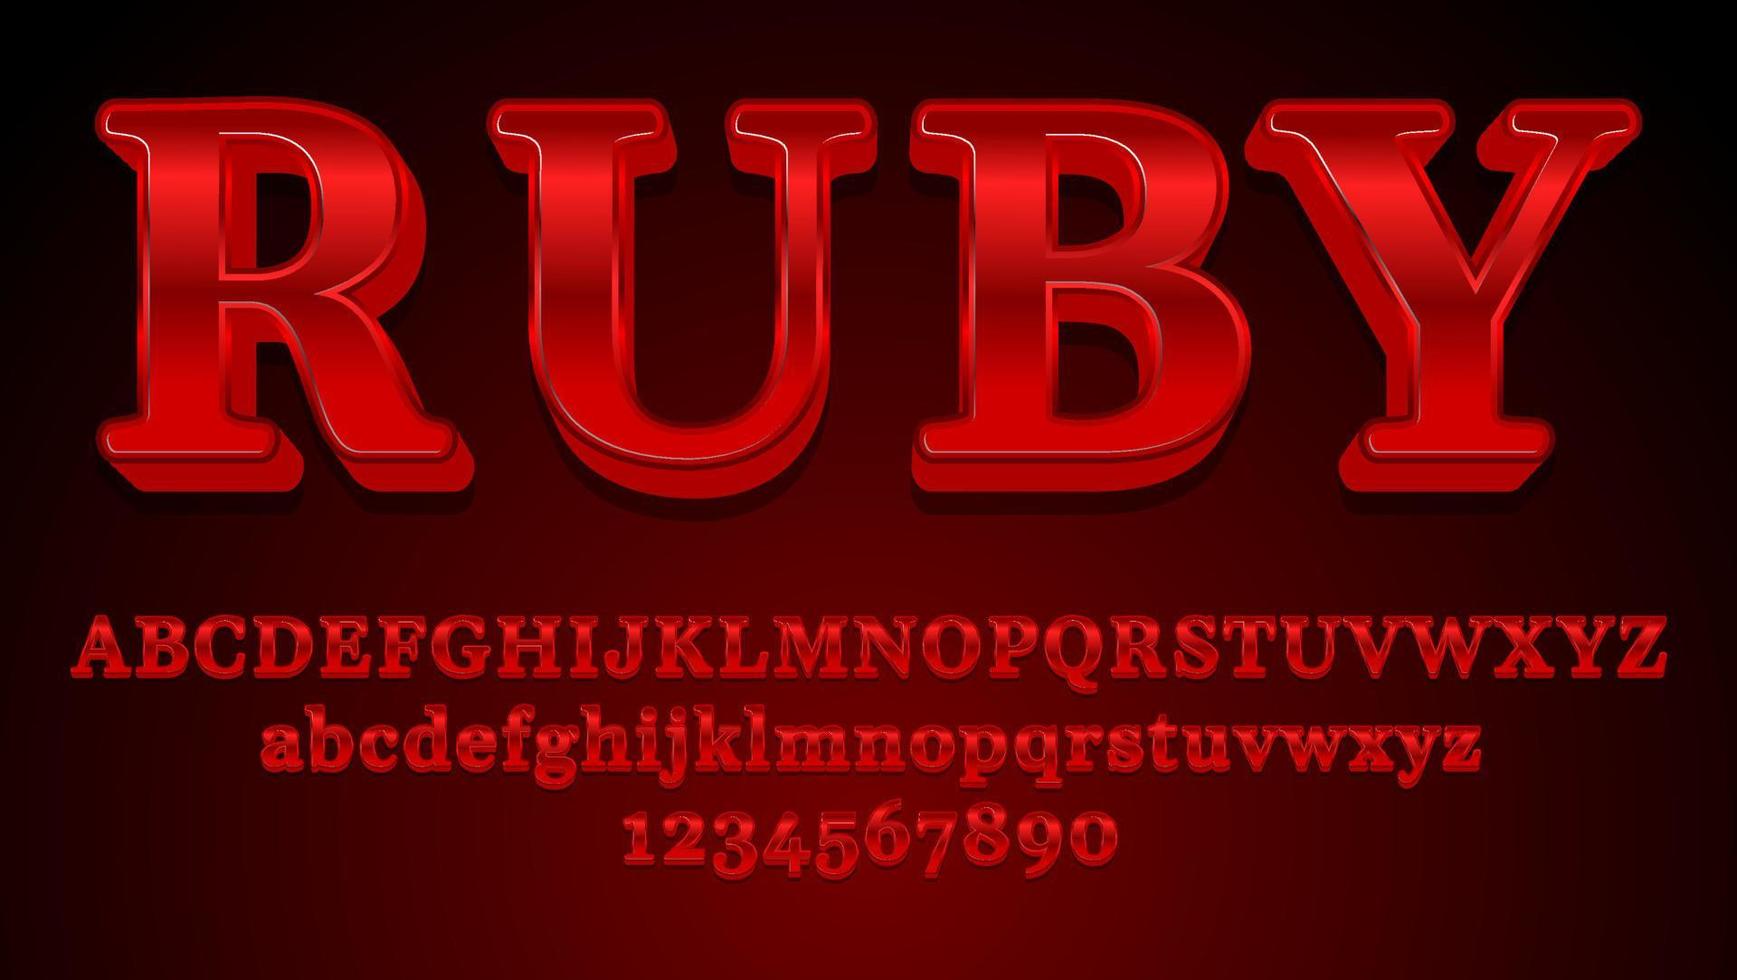 moderne glanzgradient rote wort rubin bearbeitbare texteffekt-designvorlage vektor